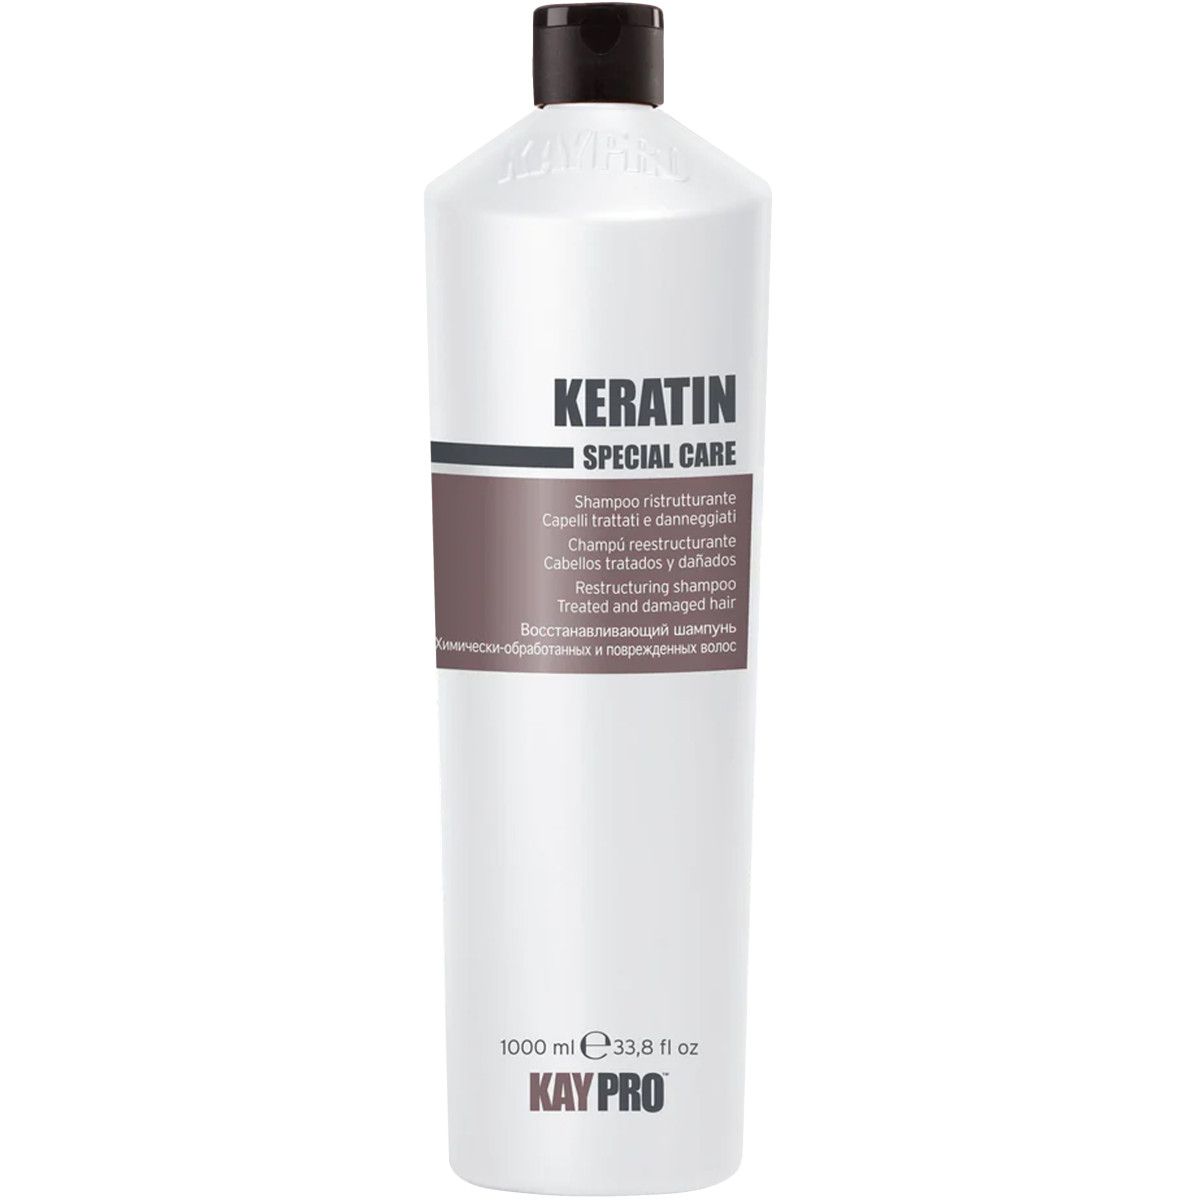 KayPro Keratin Special Care - szampon regenerujący do włosów, 1000ml